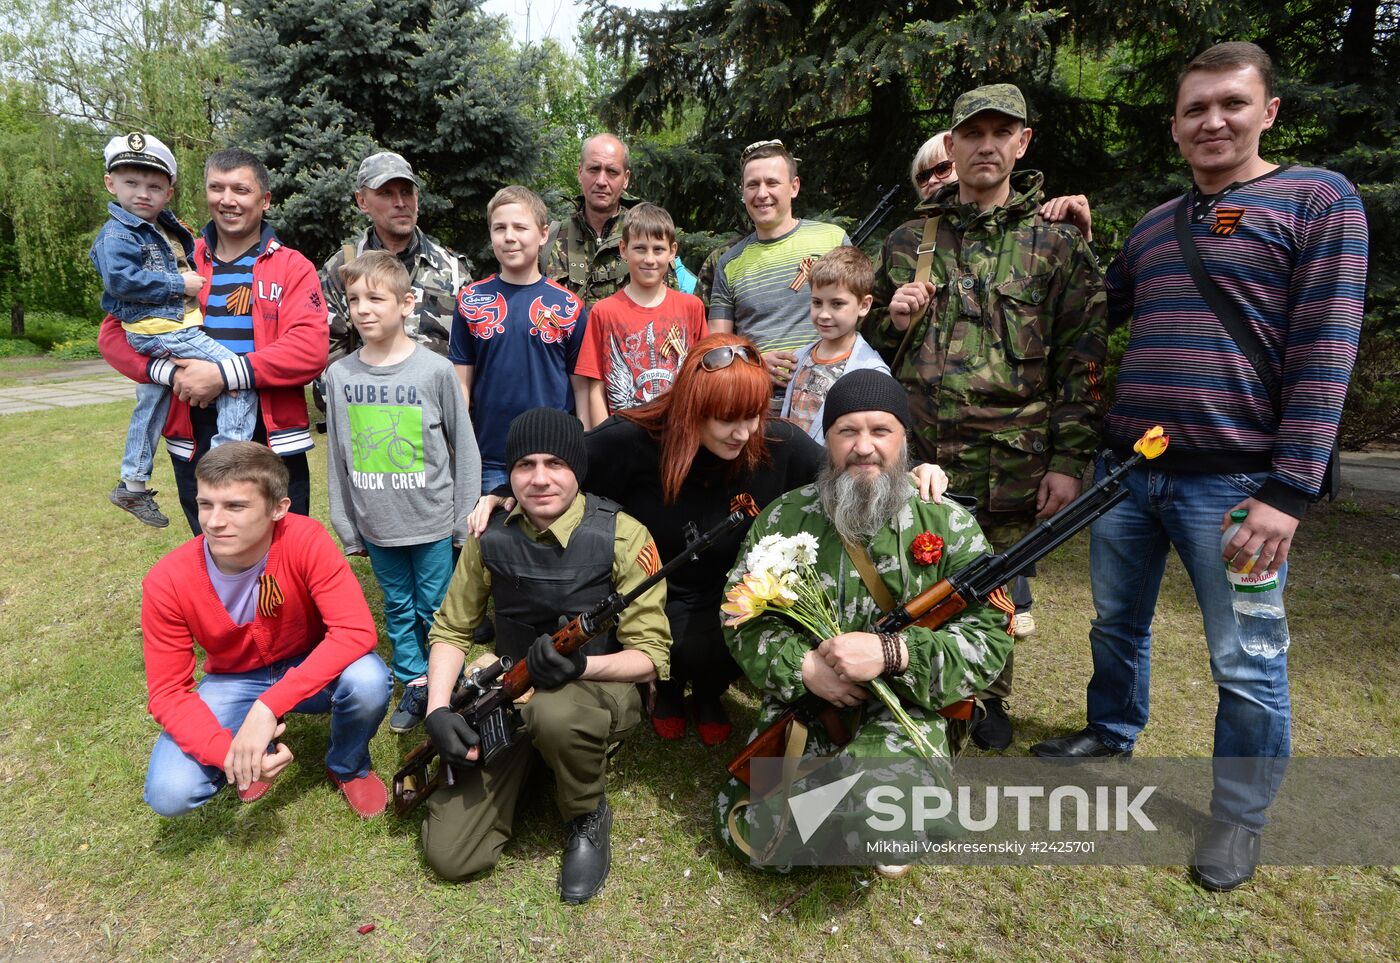 Slaviansk celebrates Victory Day